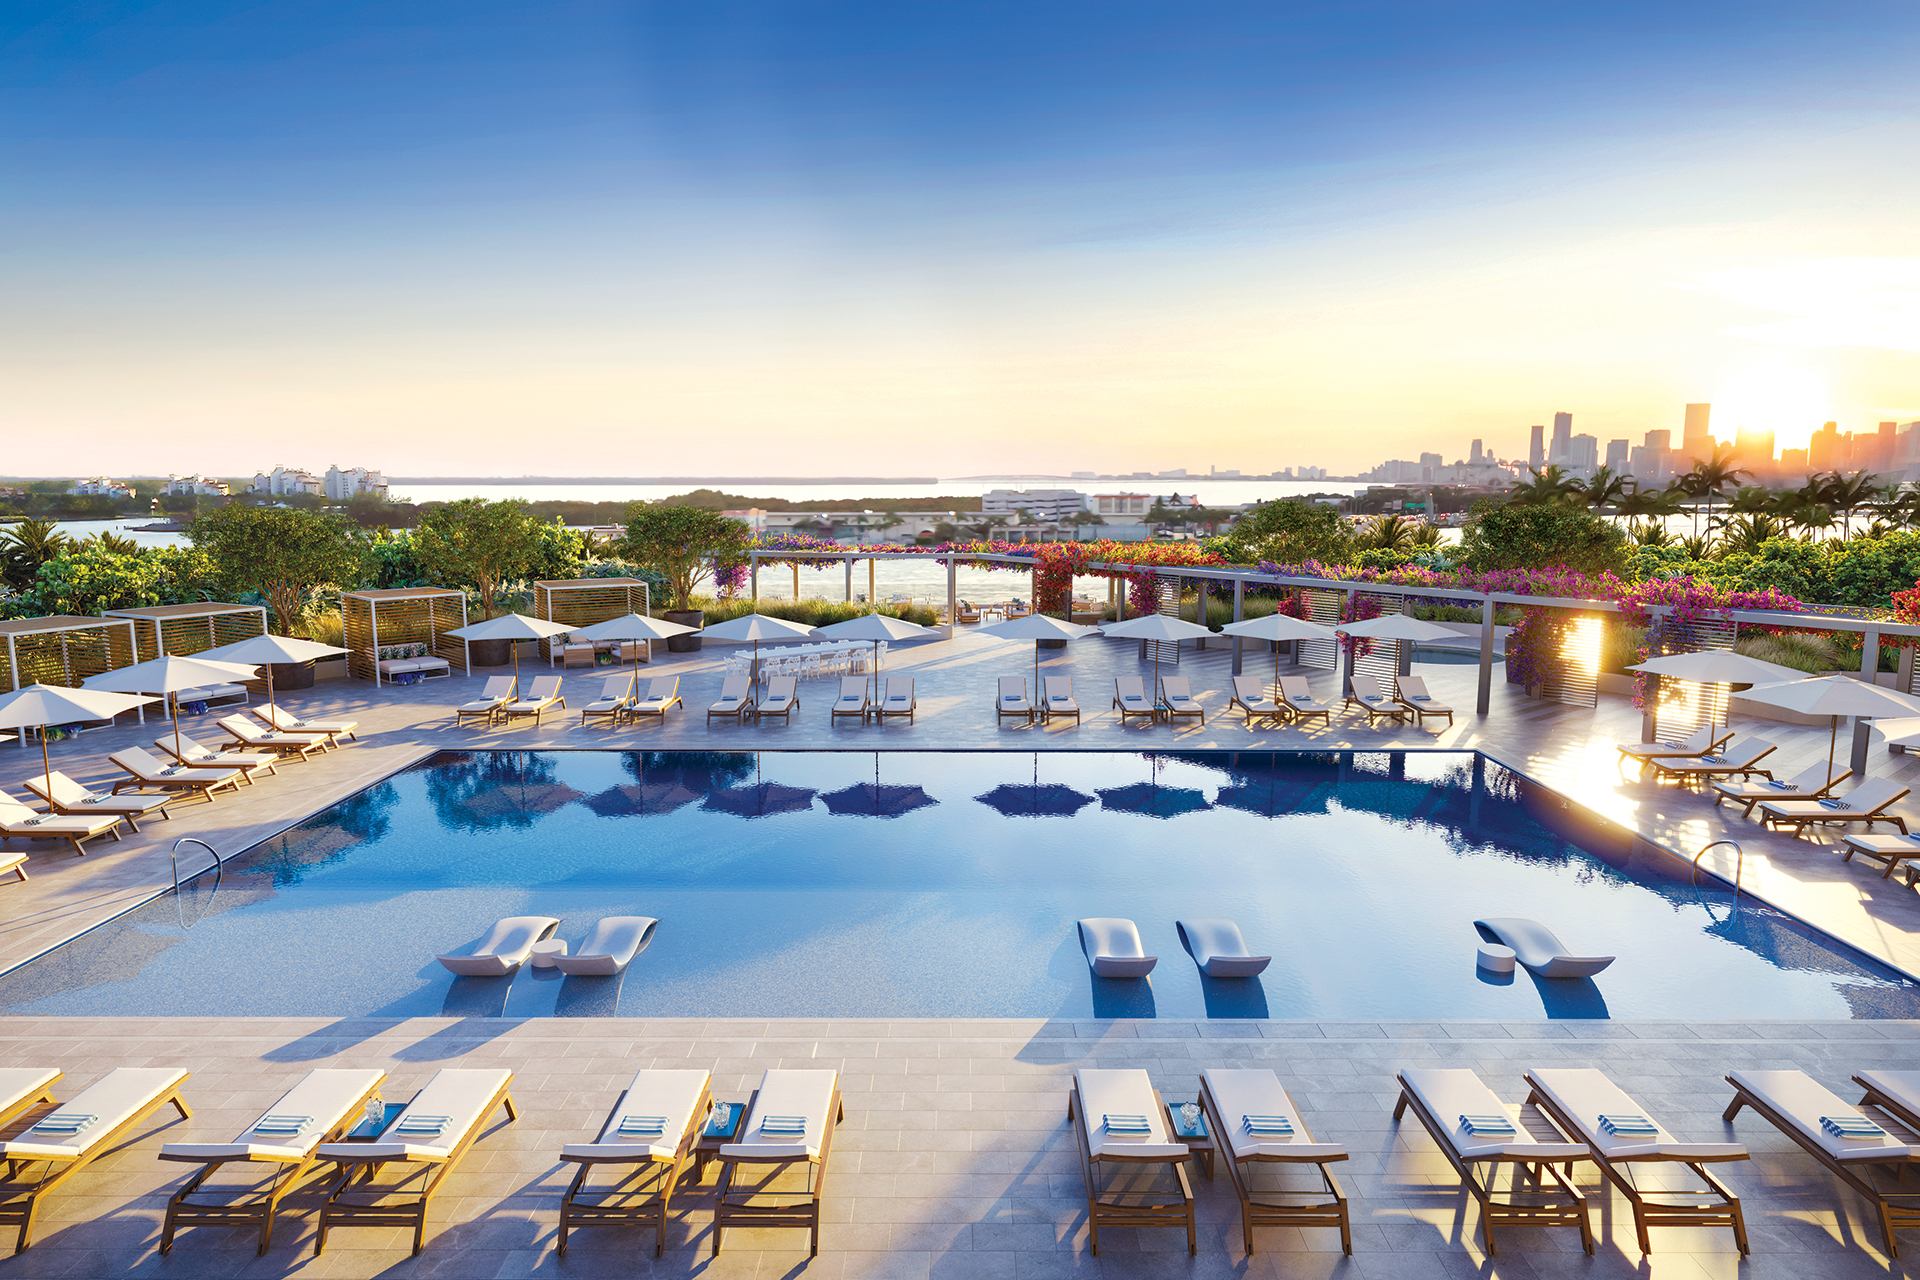 98 Residências de 2 a 5 quartos, com plantas generosas de 165 a 397 m2 , todas com vista mar e acabamentos de alto padrão. Elevadores privativos para cada residência, vista mar e para Miami Beach.